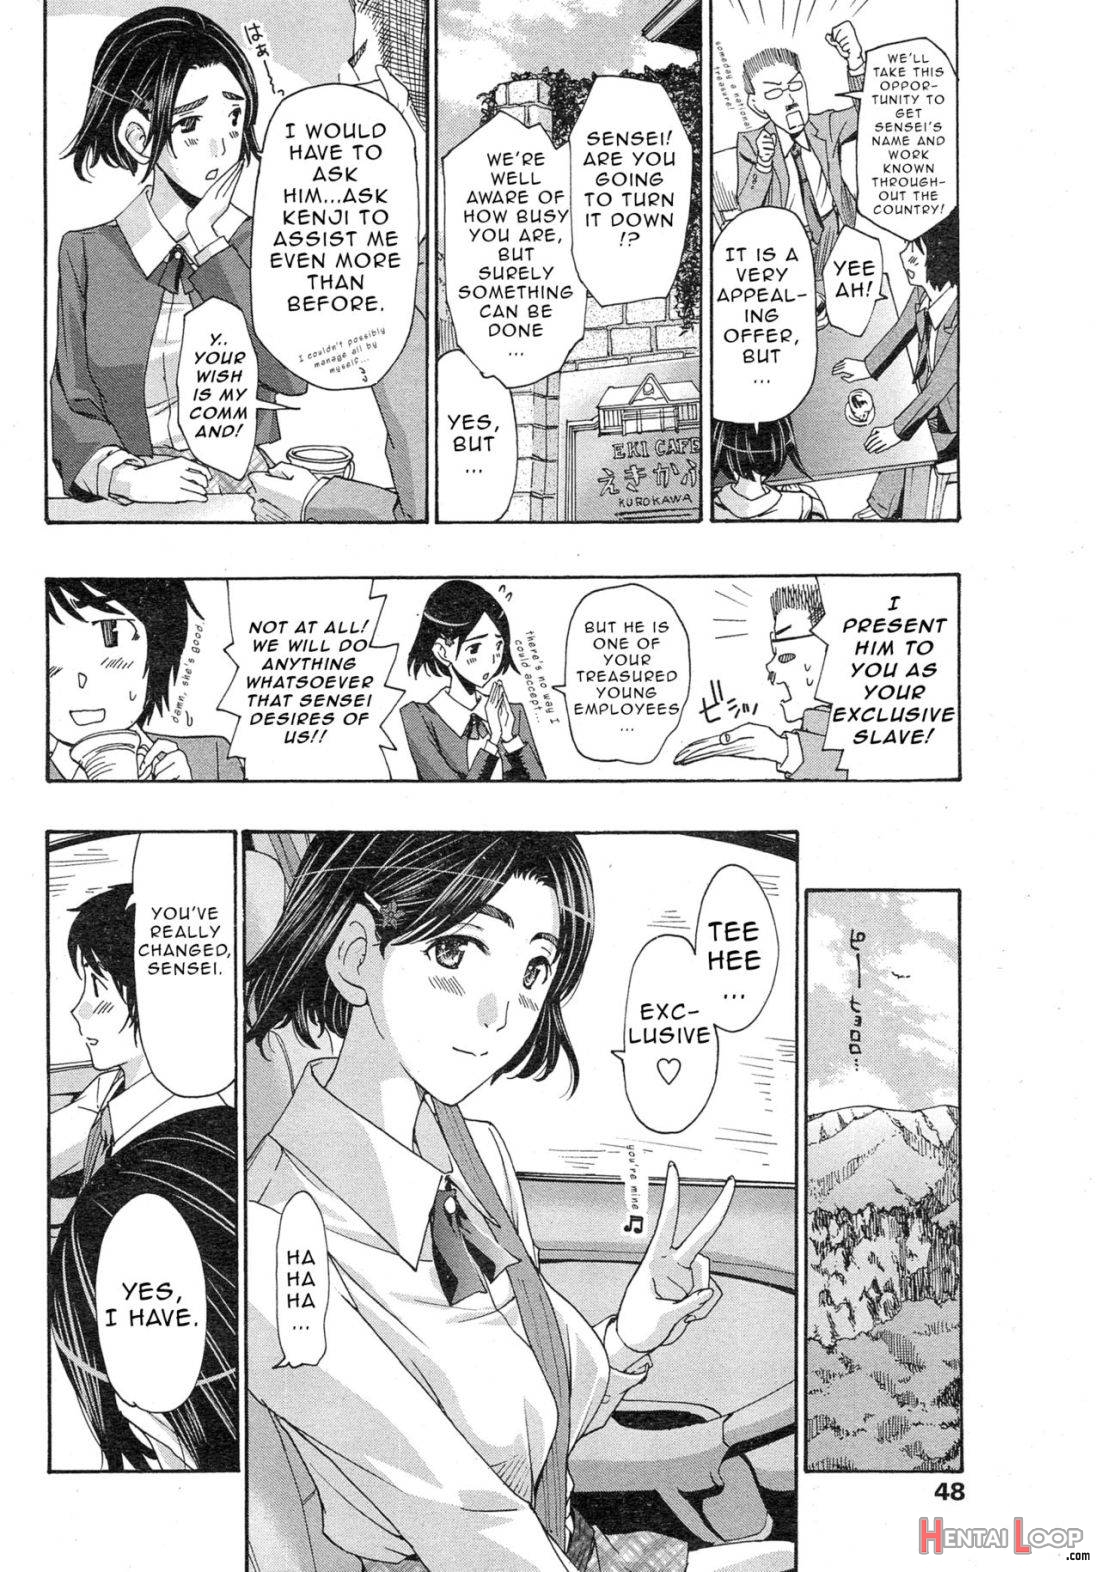 Watashito Iikoto Shiyo? page 148